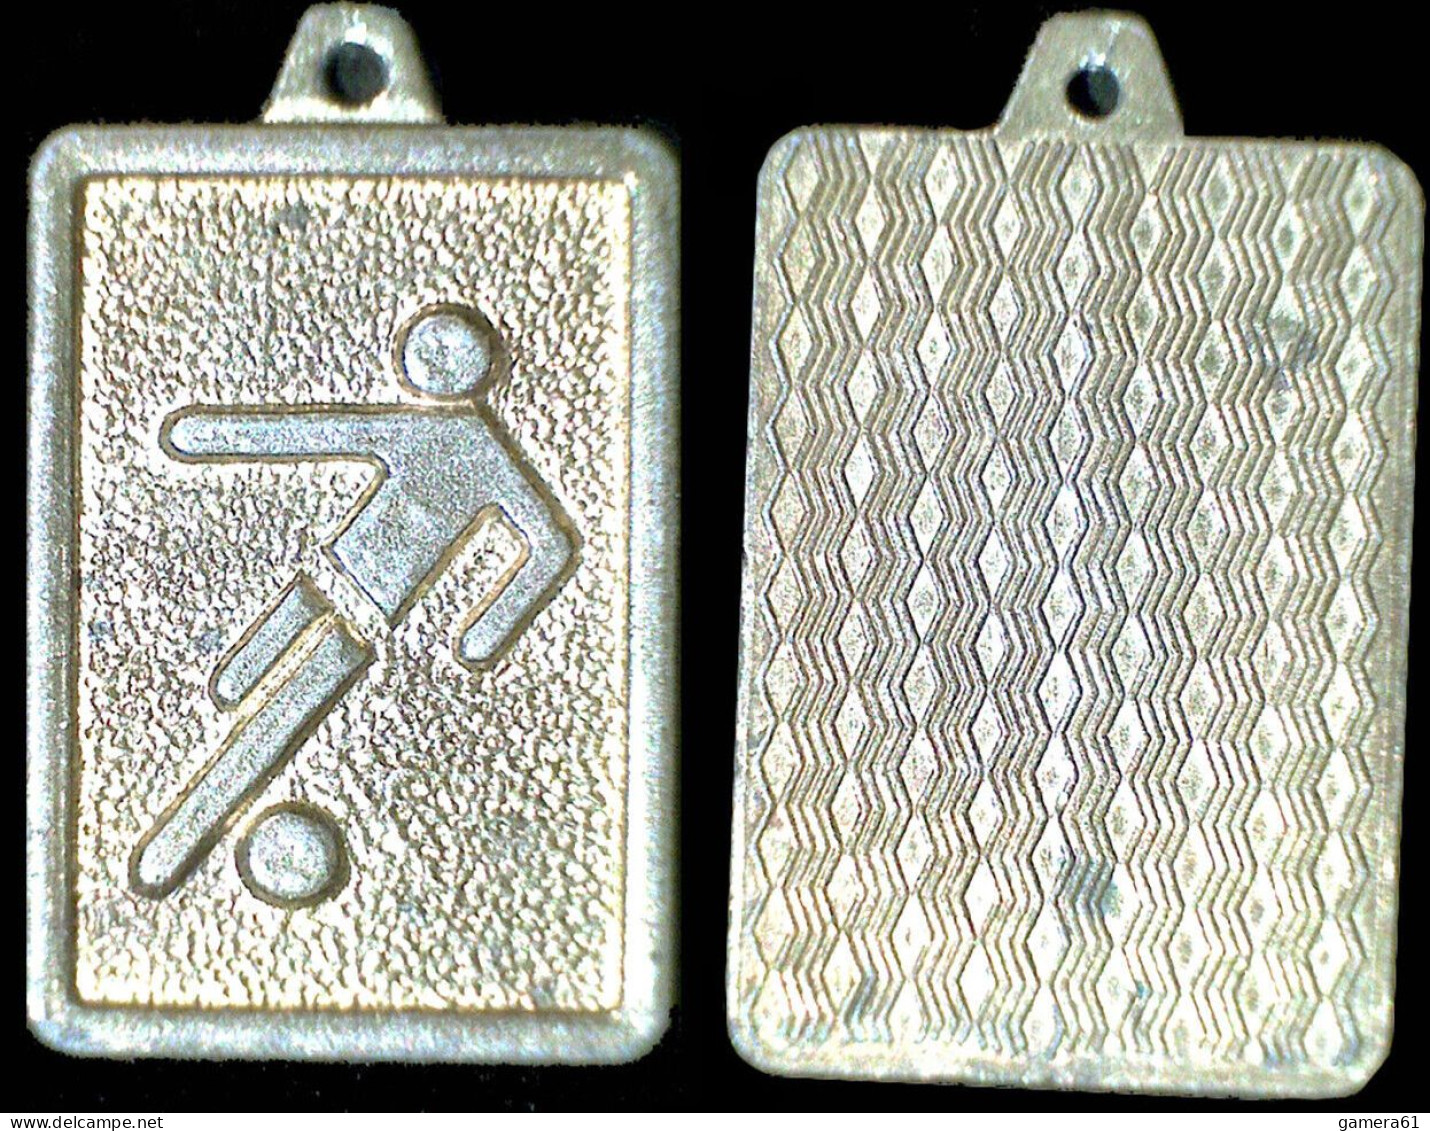 KINDER METALFIGUREN Medaglia Anhänger Metal Kinder 1977 FOOTBALL ORO GOLD RRRRR! - Figurillas En Metal